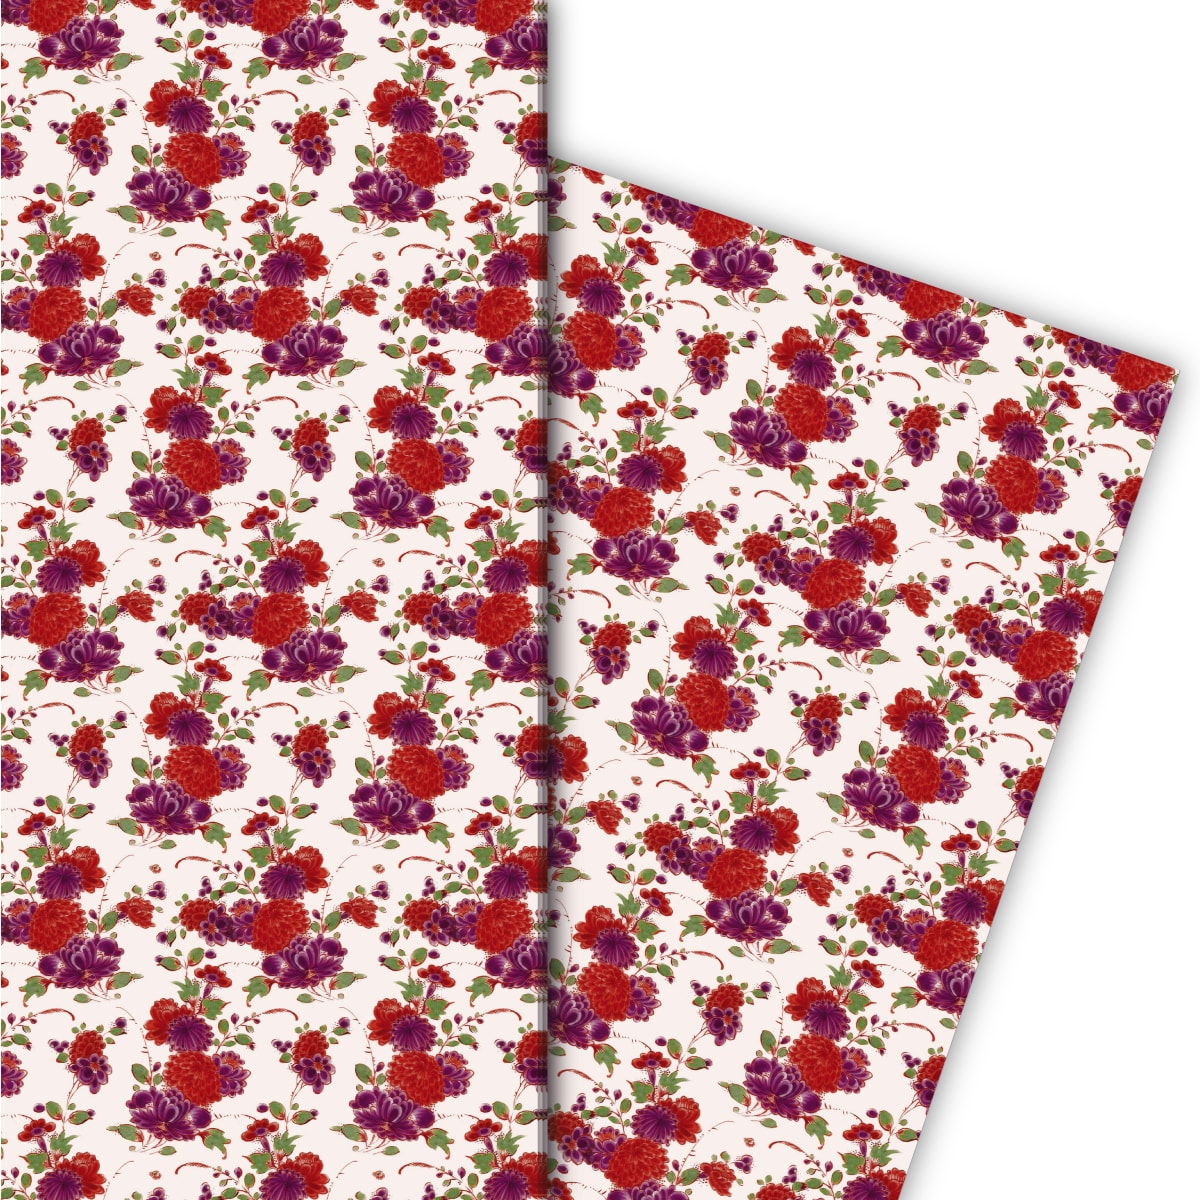 Kartenkaufrausch: Hübsches Geschenkpapier für tolle aus unserer florale Papeterie in weiß